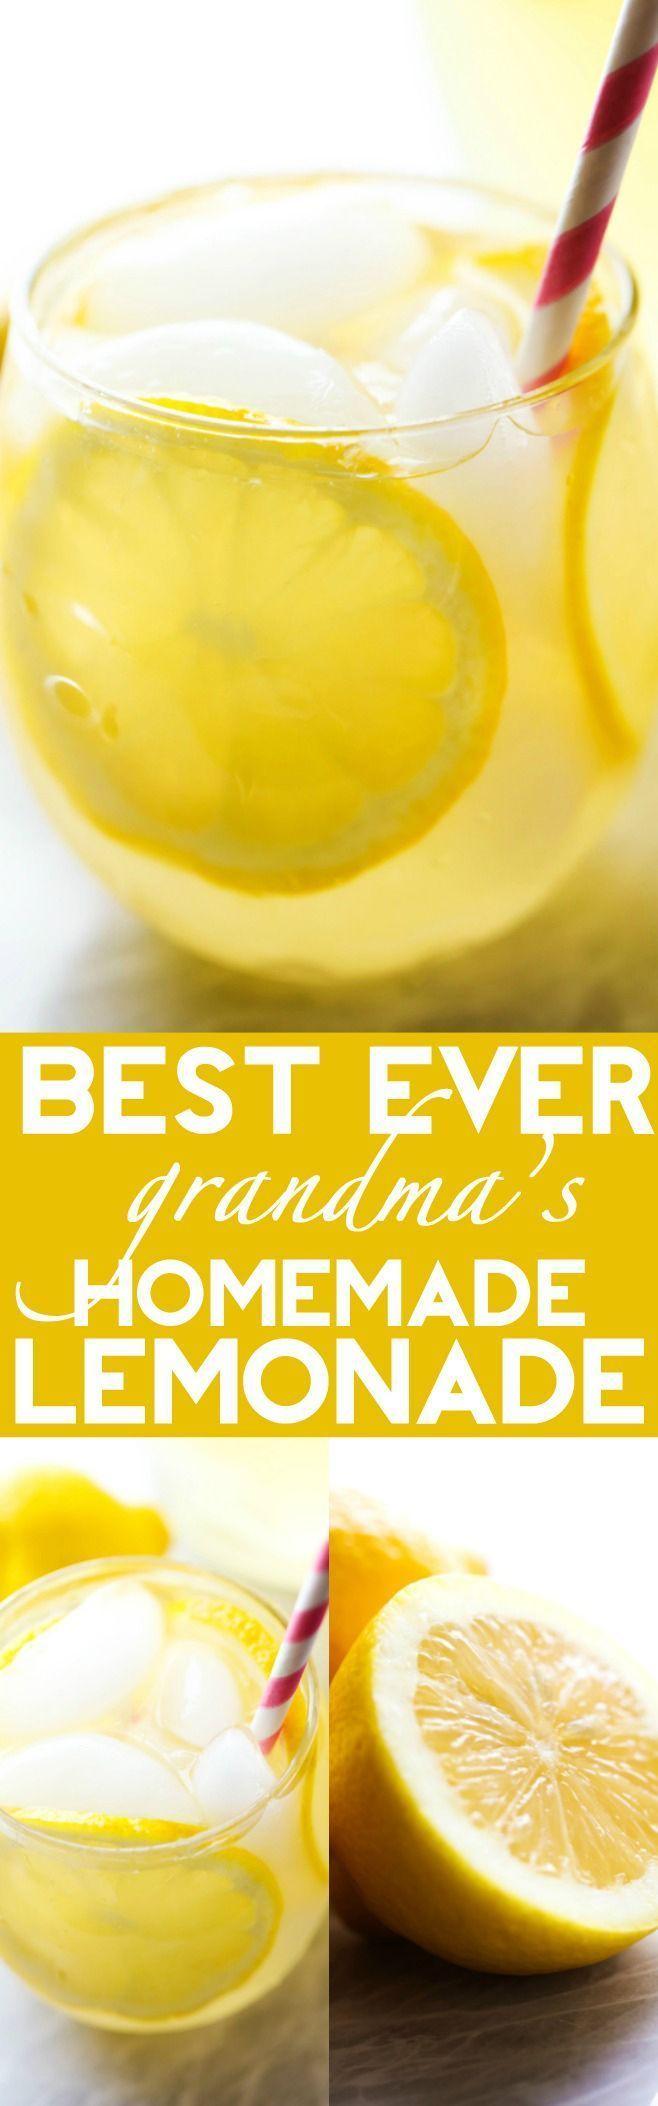 Wedding - Best Ever Homemade Lemonade